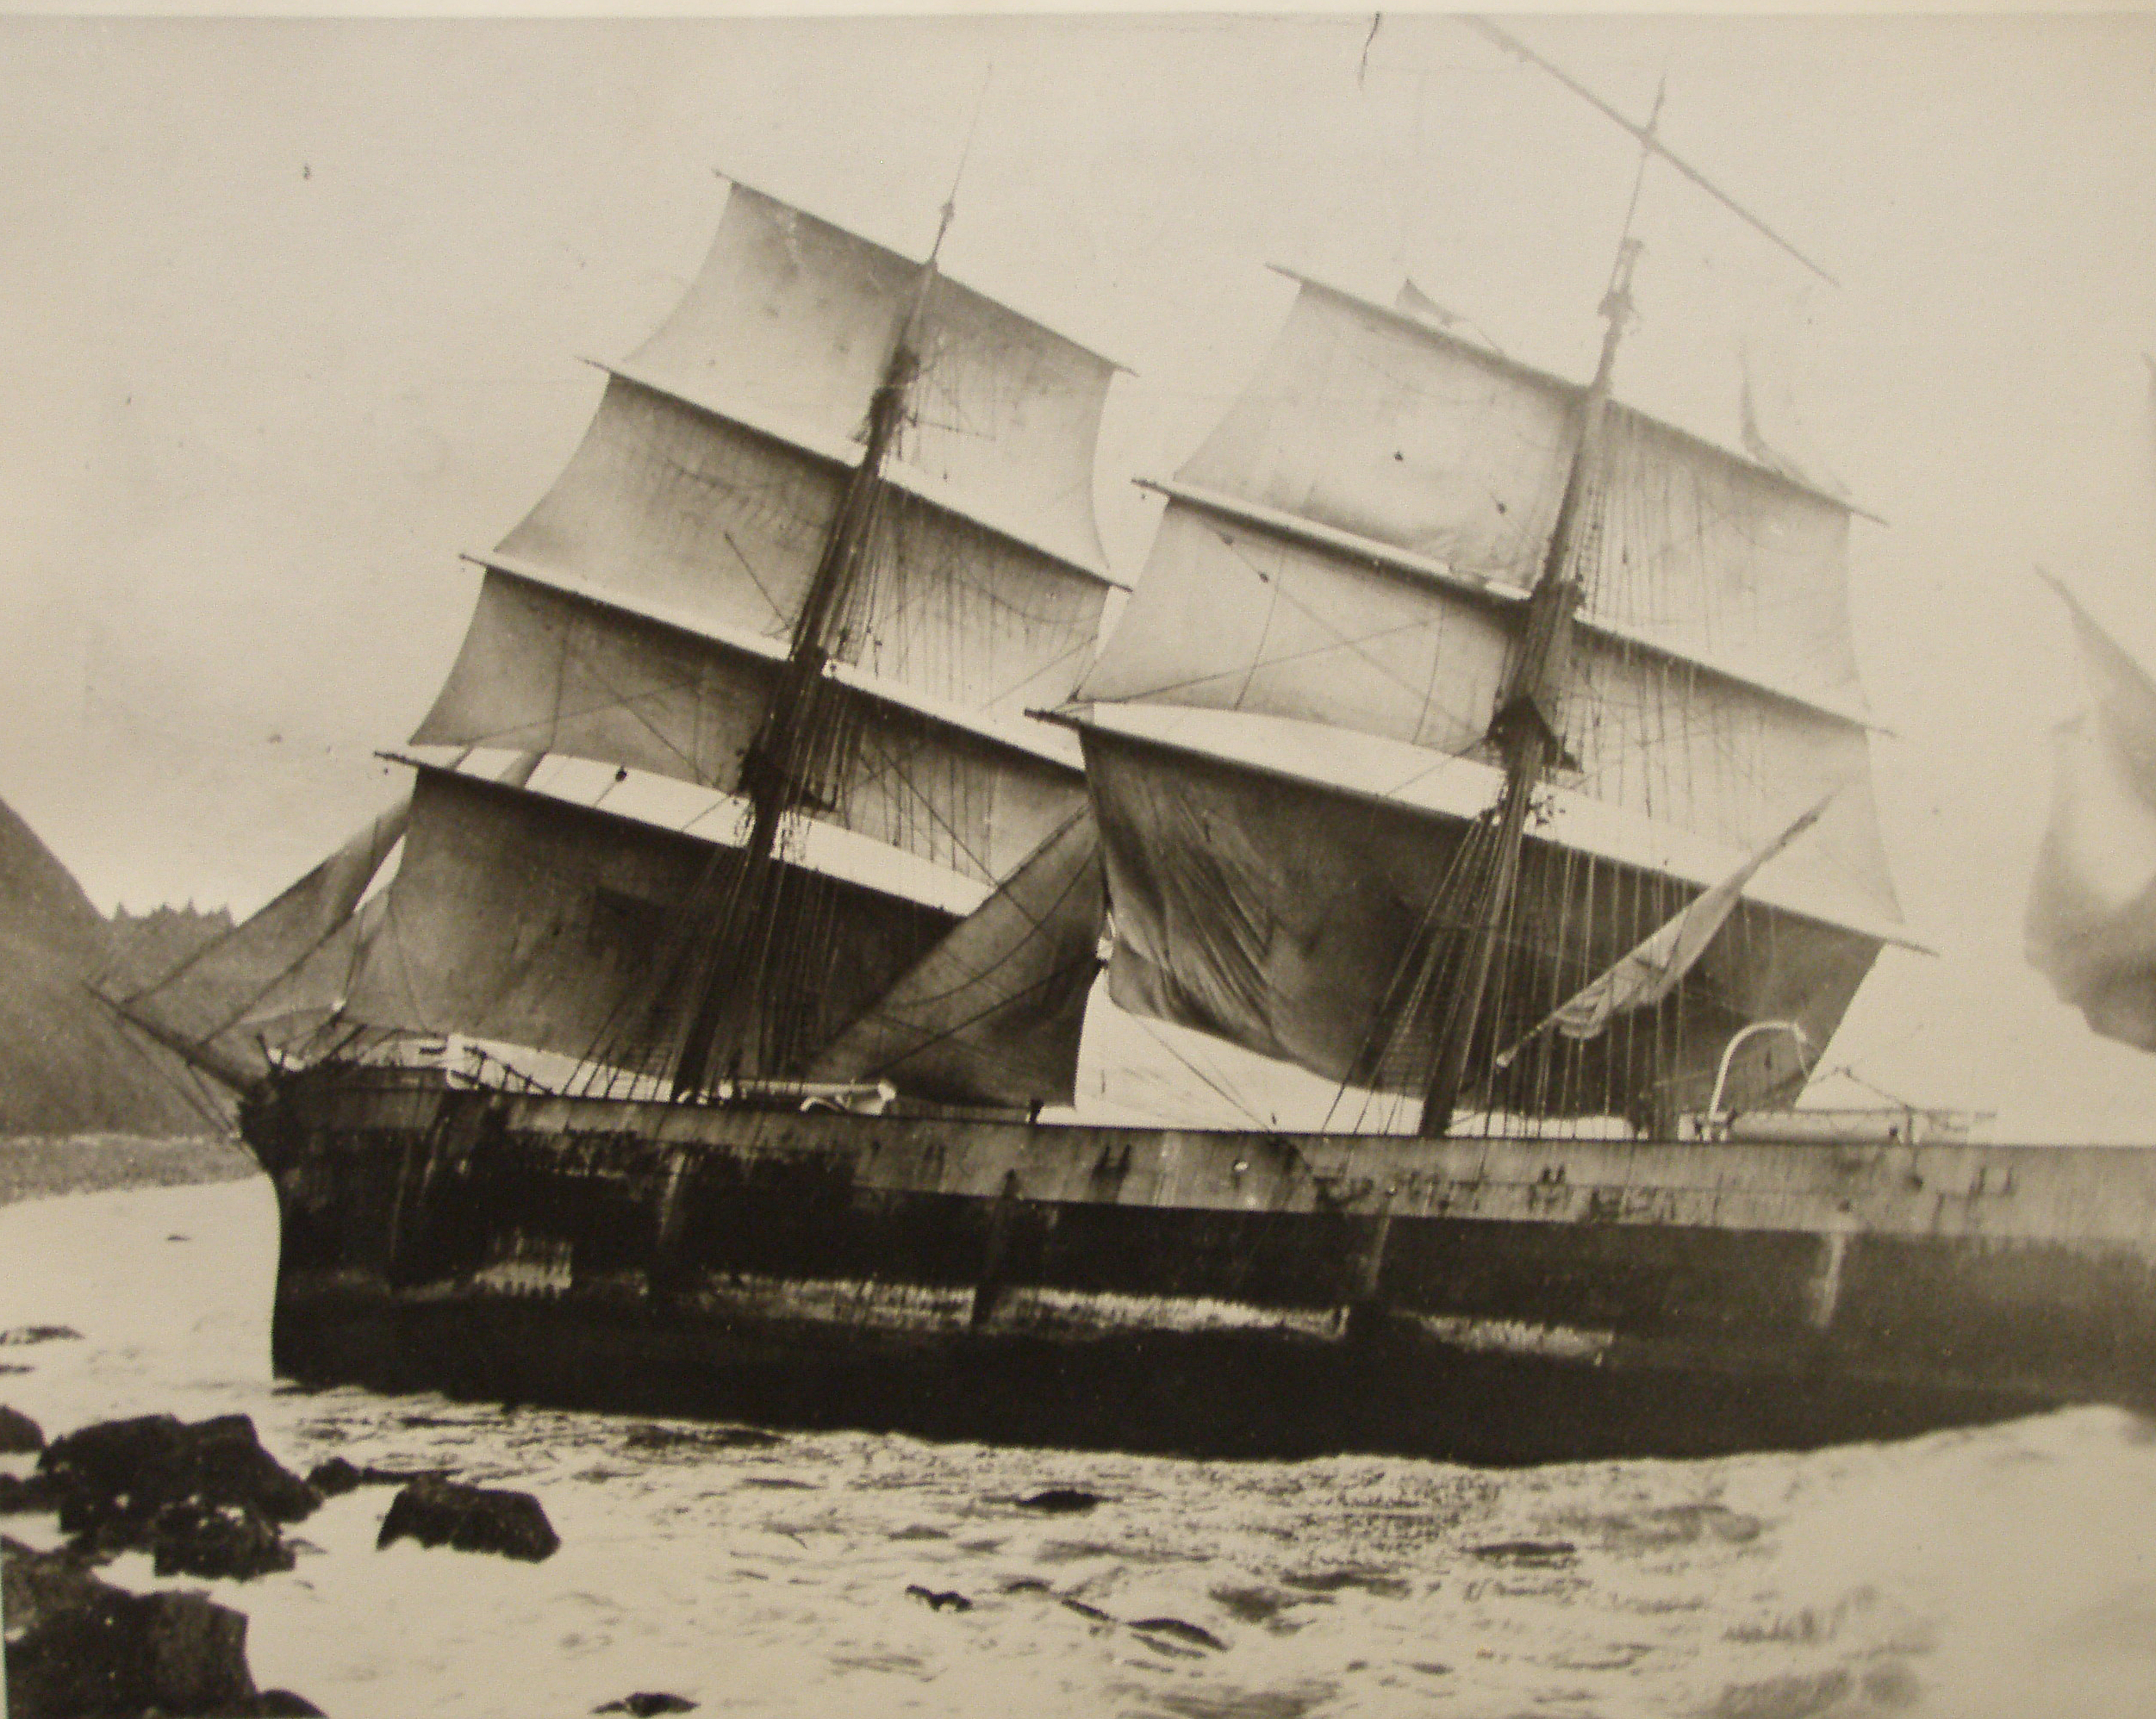 Wreck of Glenesslin by P.Bartels.jpg